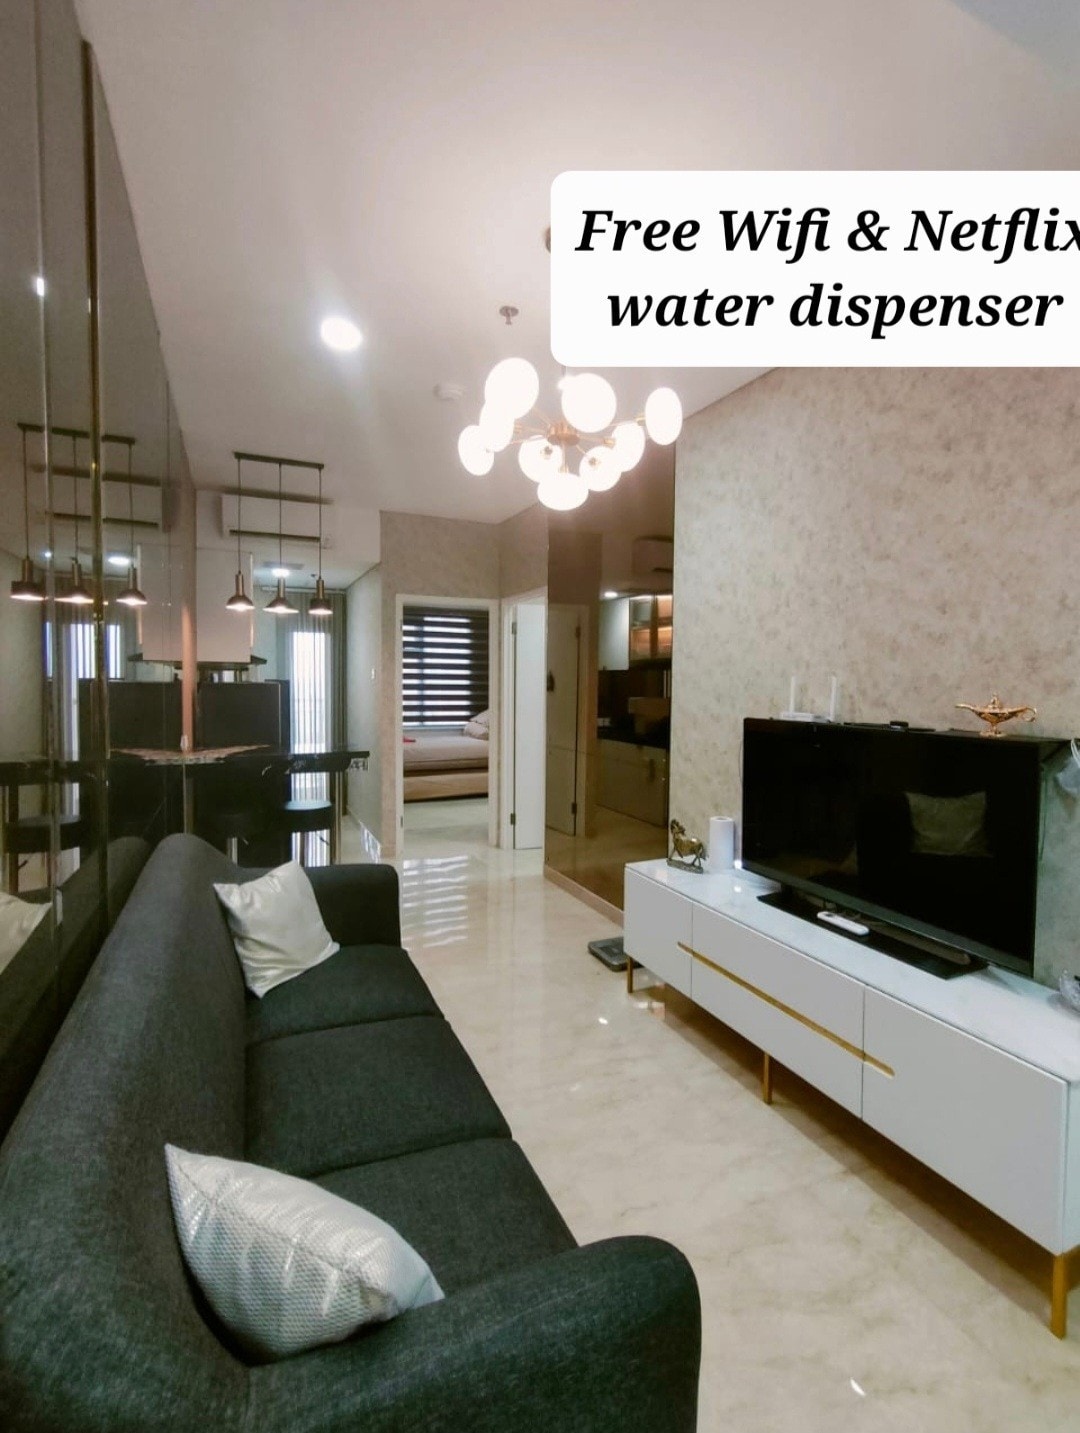 自由塔公寓免费无线网络和Netflix